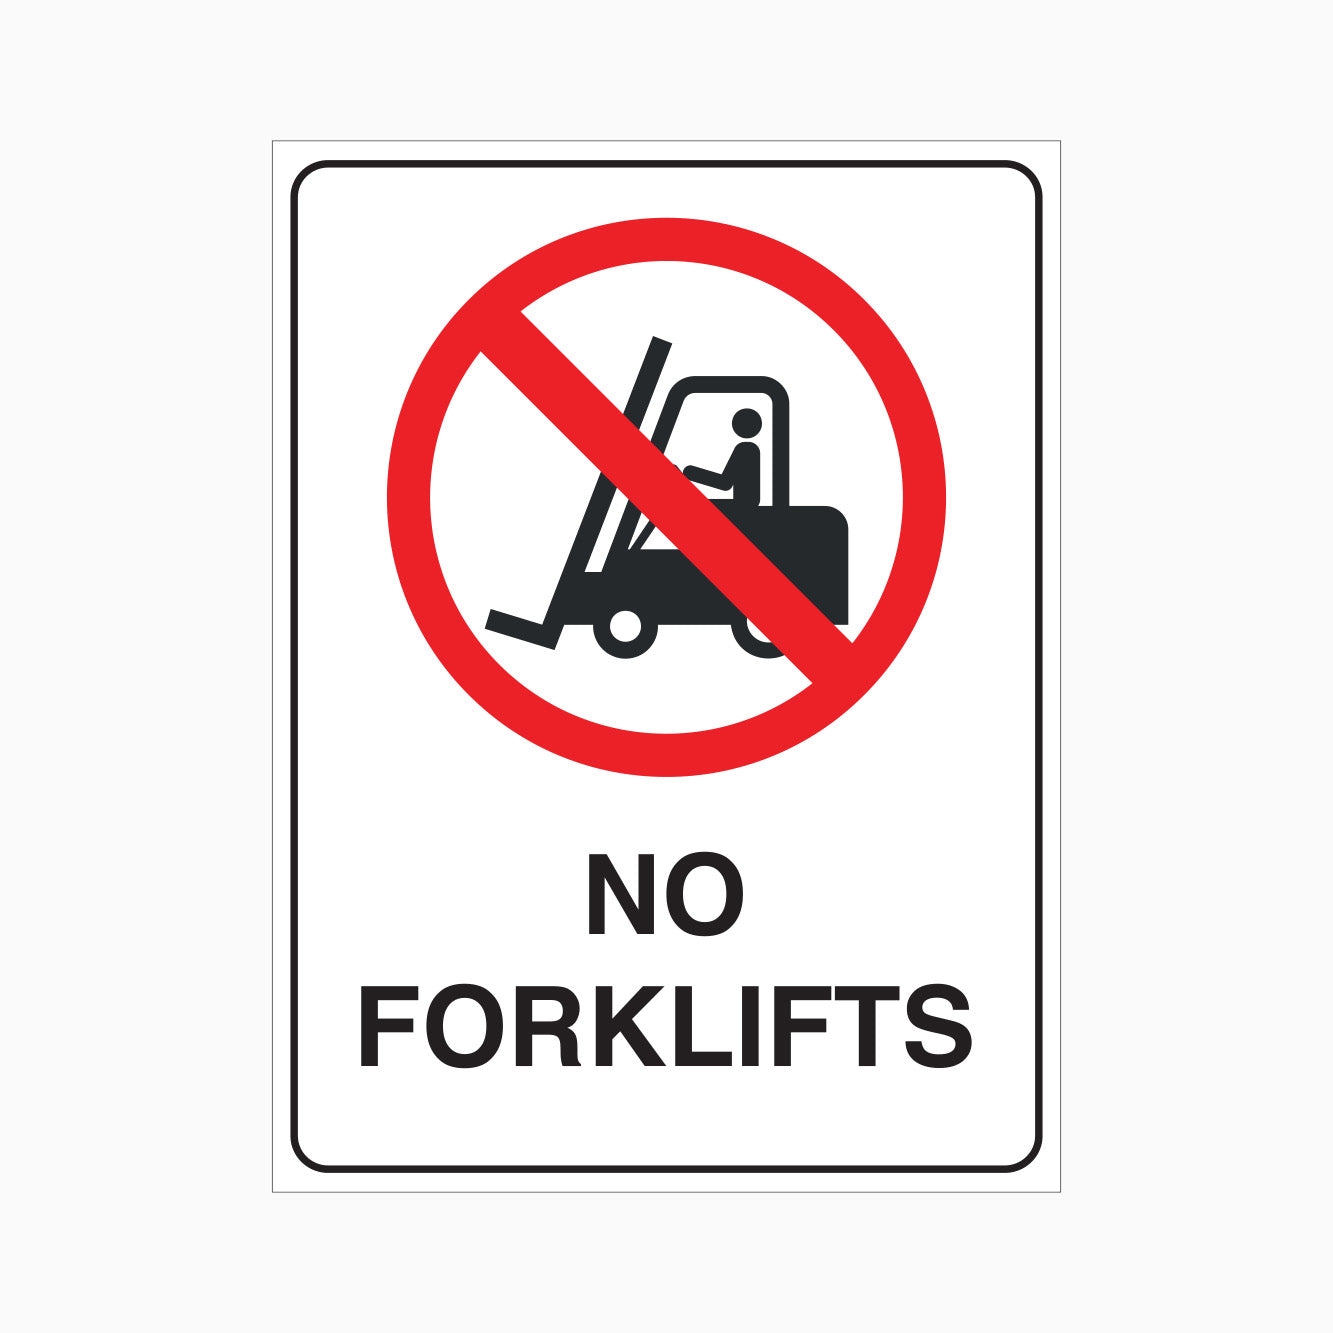 NO FORKLIFTS SIGN